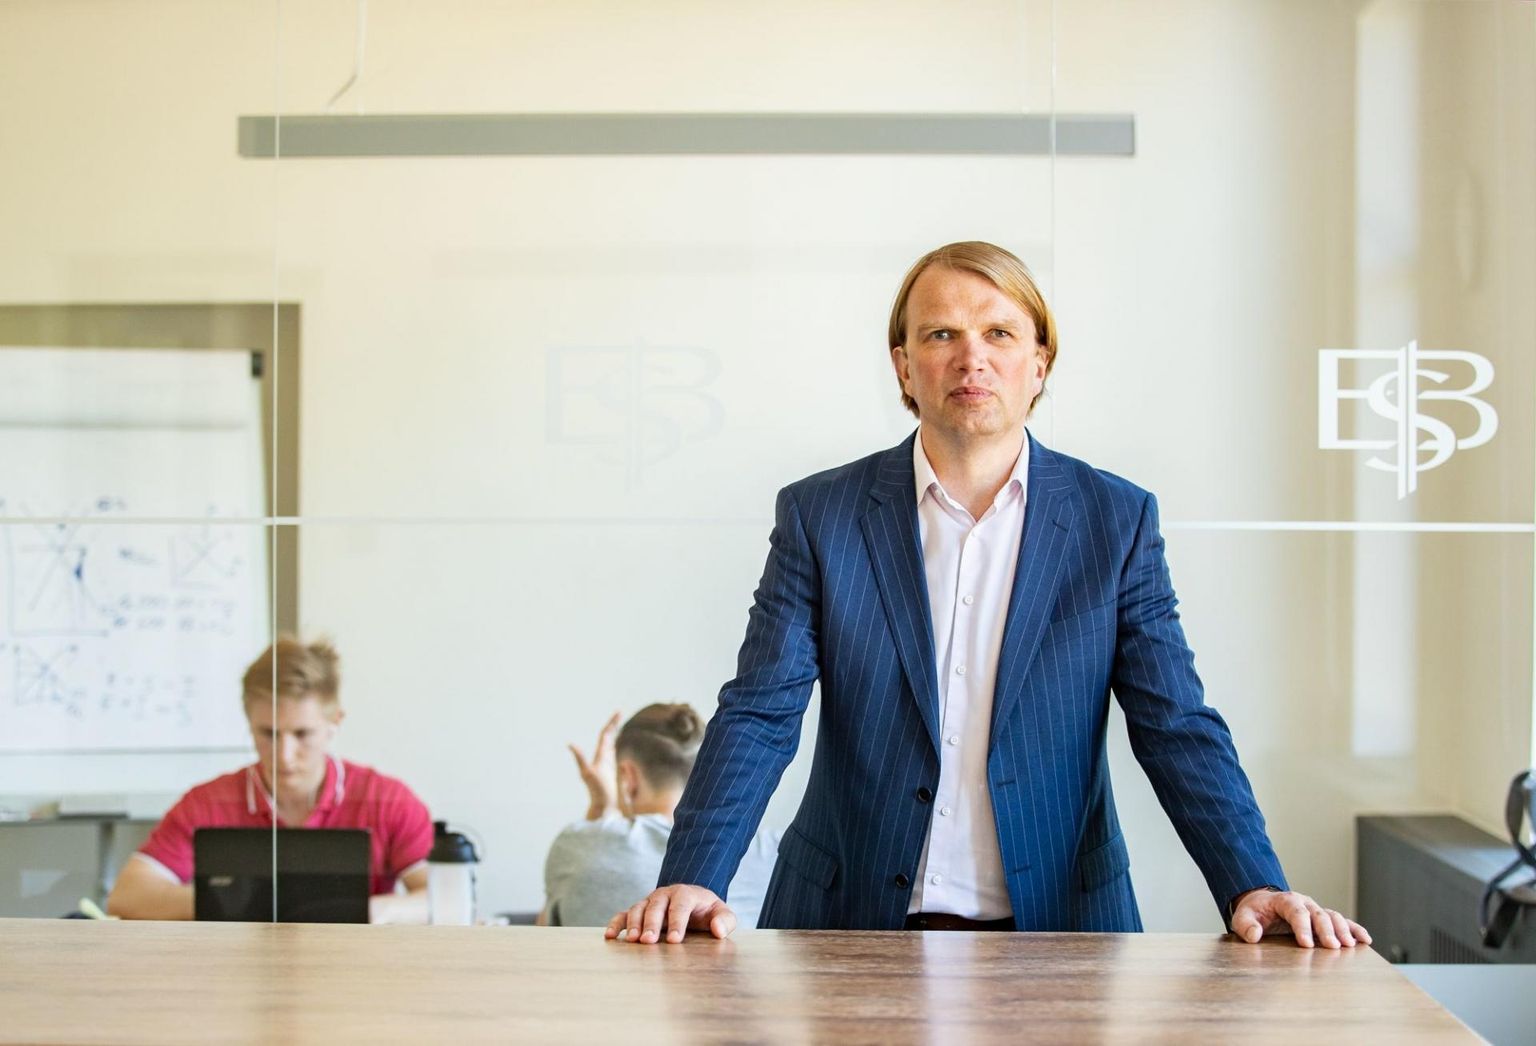 Alguses läksid väga paljud õppejõud Eestist Soome õpetama, aga nüüd on juba mõistlikum palgata õppejõude Soomest, ütleb EBSi tulevane rektor Meelis Kitsing. 